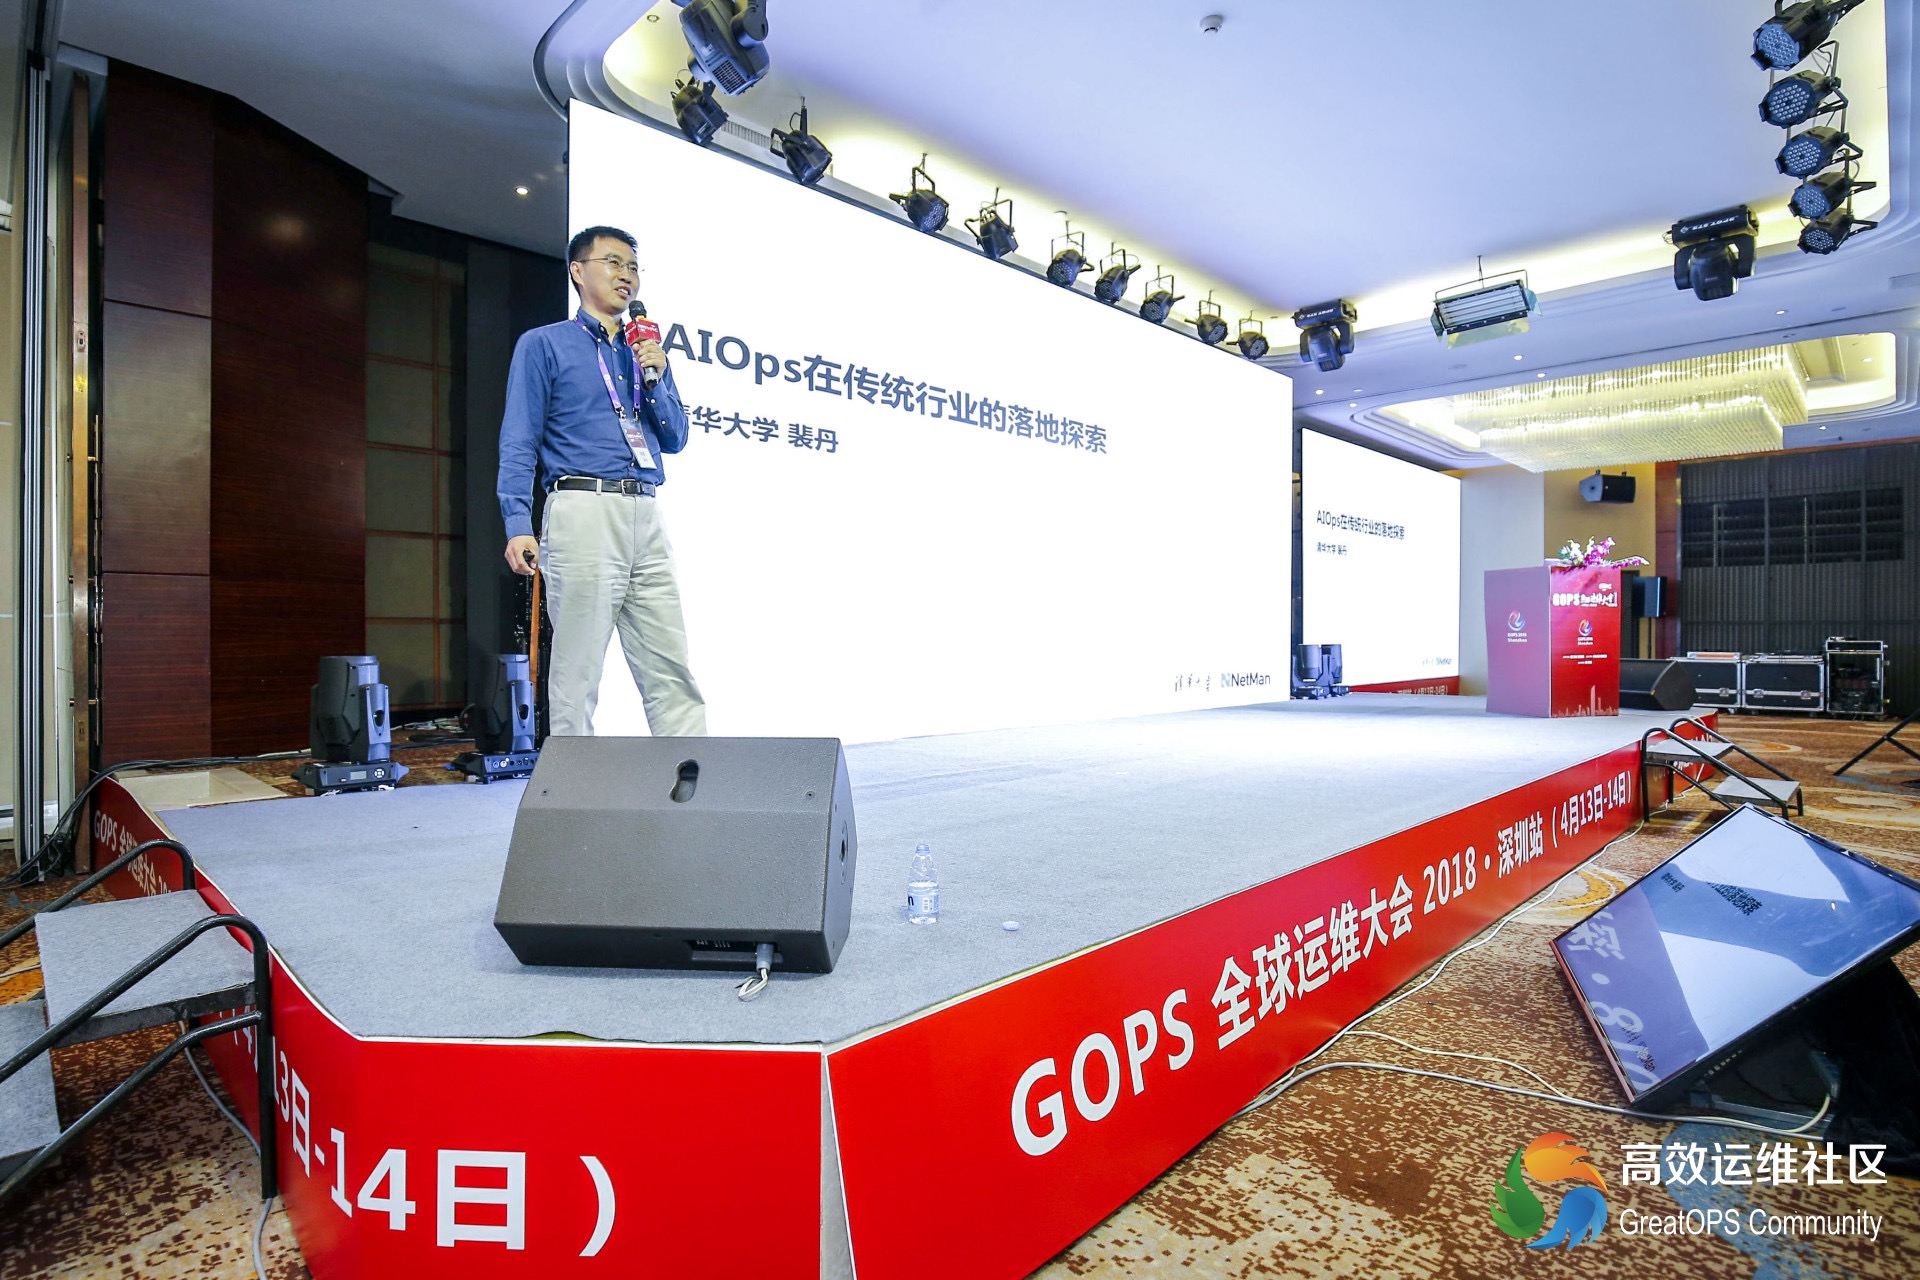 Dan delivered a Keynote Speech “AIOps in Enterprise” at GOPS 2018 Shenzhen